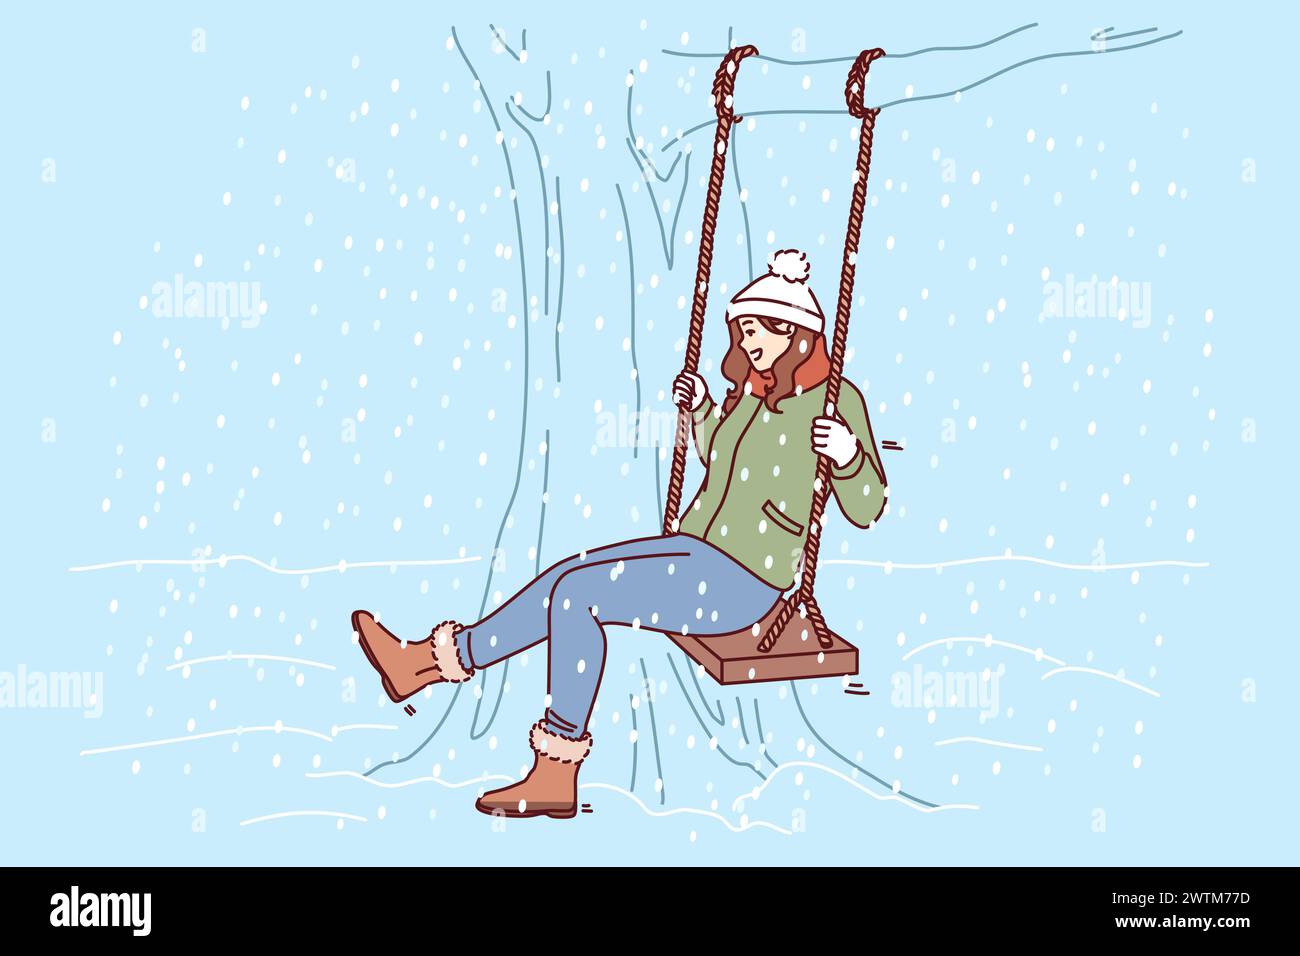 Die Frau schwingt im Winterpark auf Schaukel und freut sich über den fallenden Schnee und das bevorstehende weihnachtsfest oder Neujahr. Junge Mädchen lacht in der Natur bei kaltem Wetter während der Winterferien. Stock Vektor